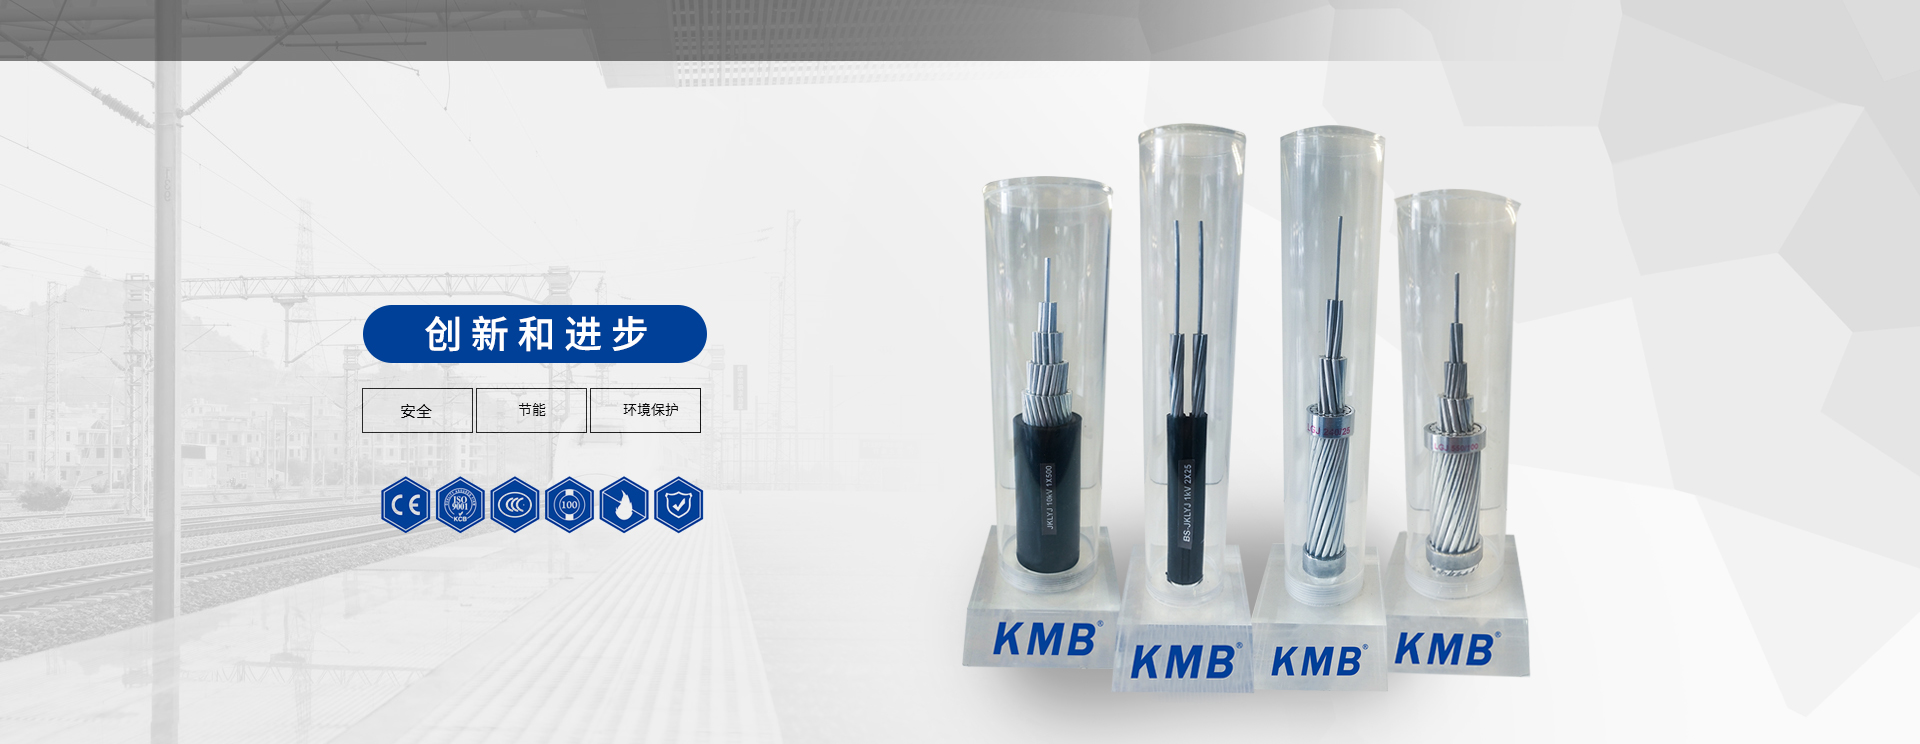 KMB-电线电缆-江西拓诚线缆制造有限公司